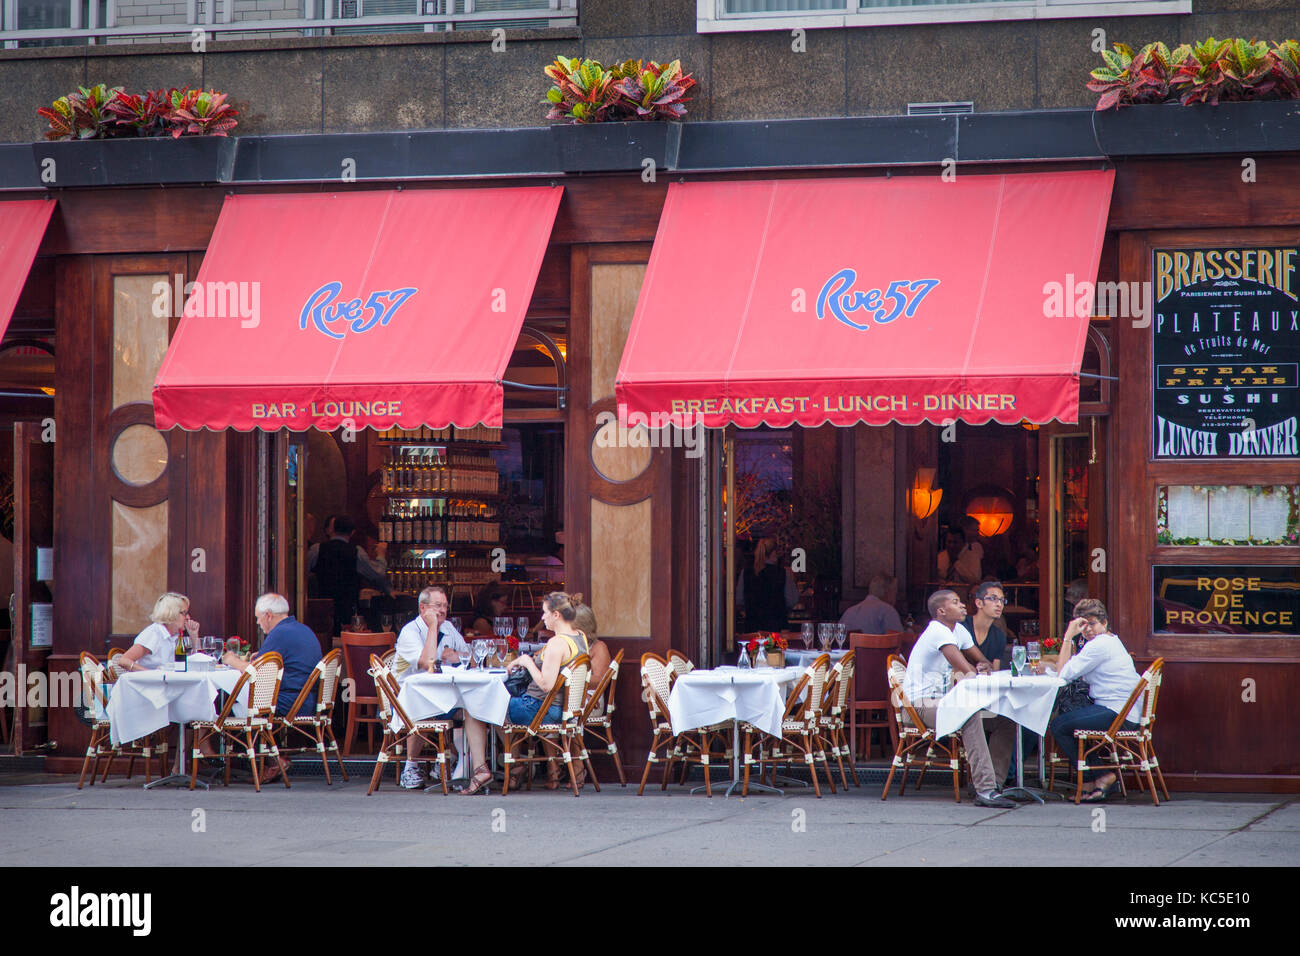 Rue 57, Brasserie Parisienne et Sushi Bar, Manhattan, New York City, USA Stockfoto